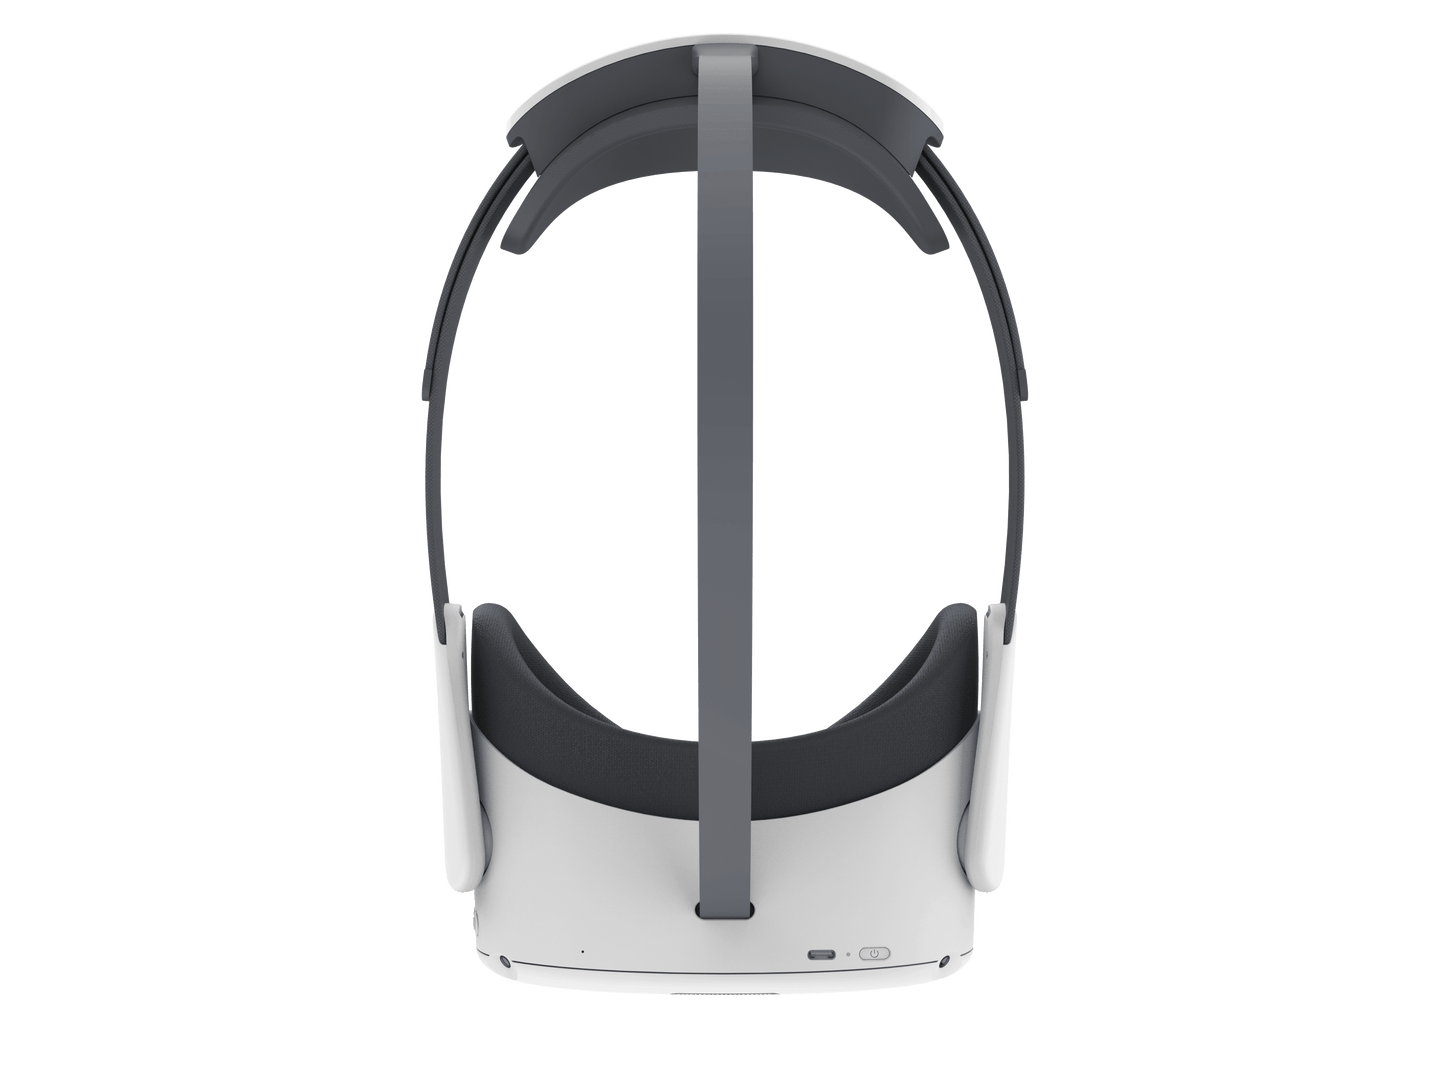 Pico Neo 3 (Gafas de Realidad Virtual)